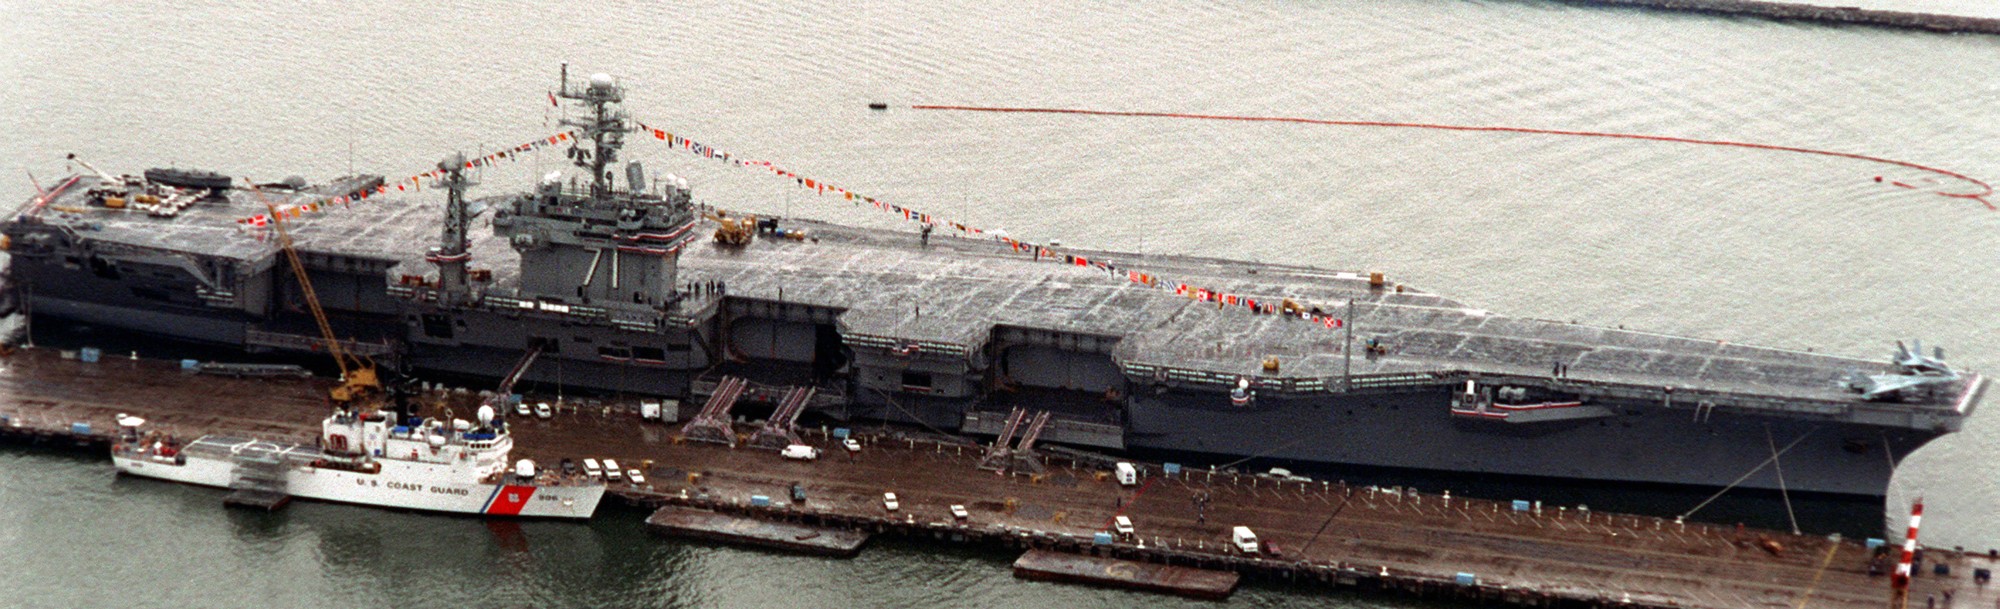 cvn-71 uss theodore roosevelt nimitz class aircraft carrier nas norfolk virginia 70